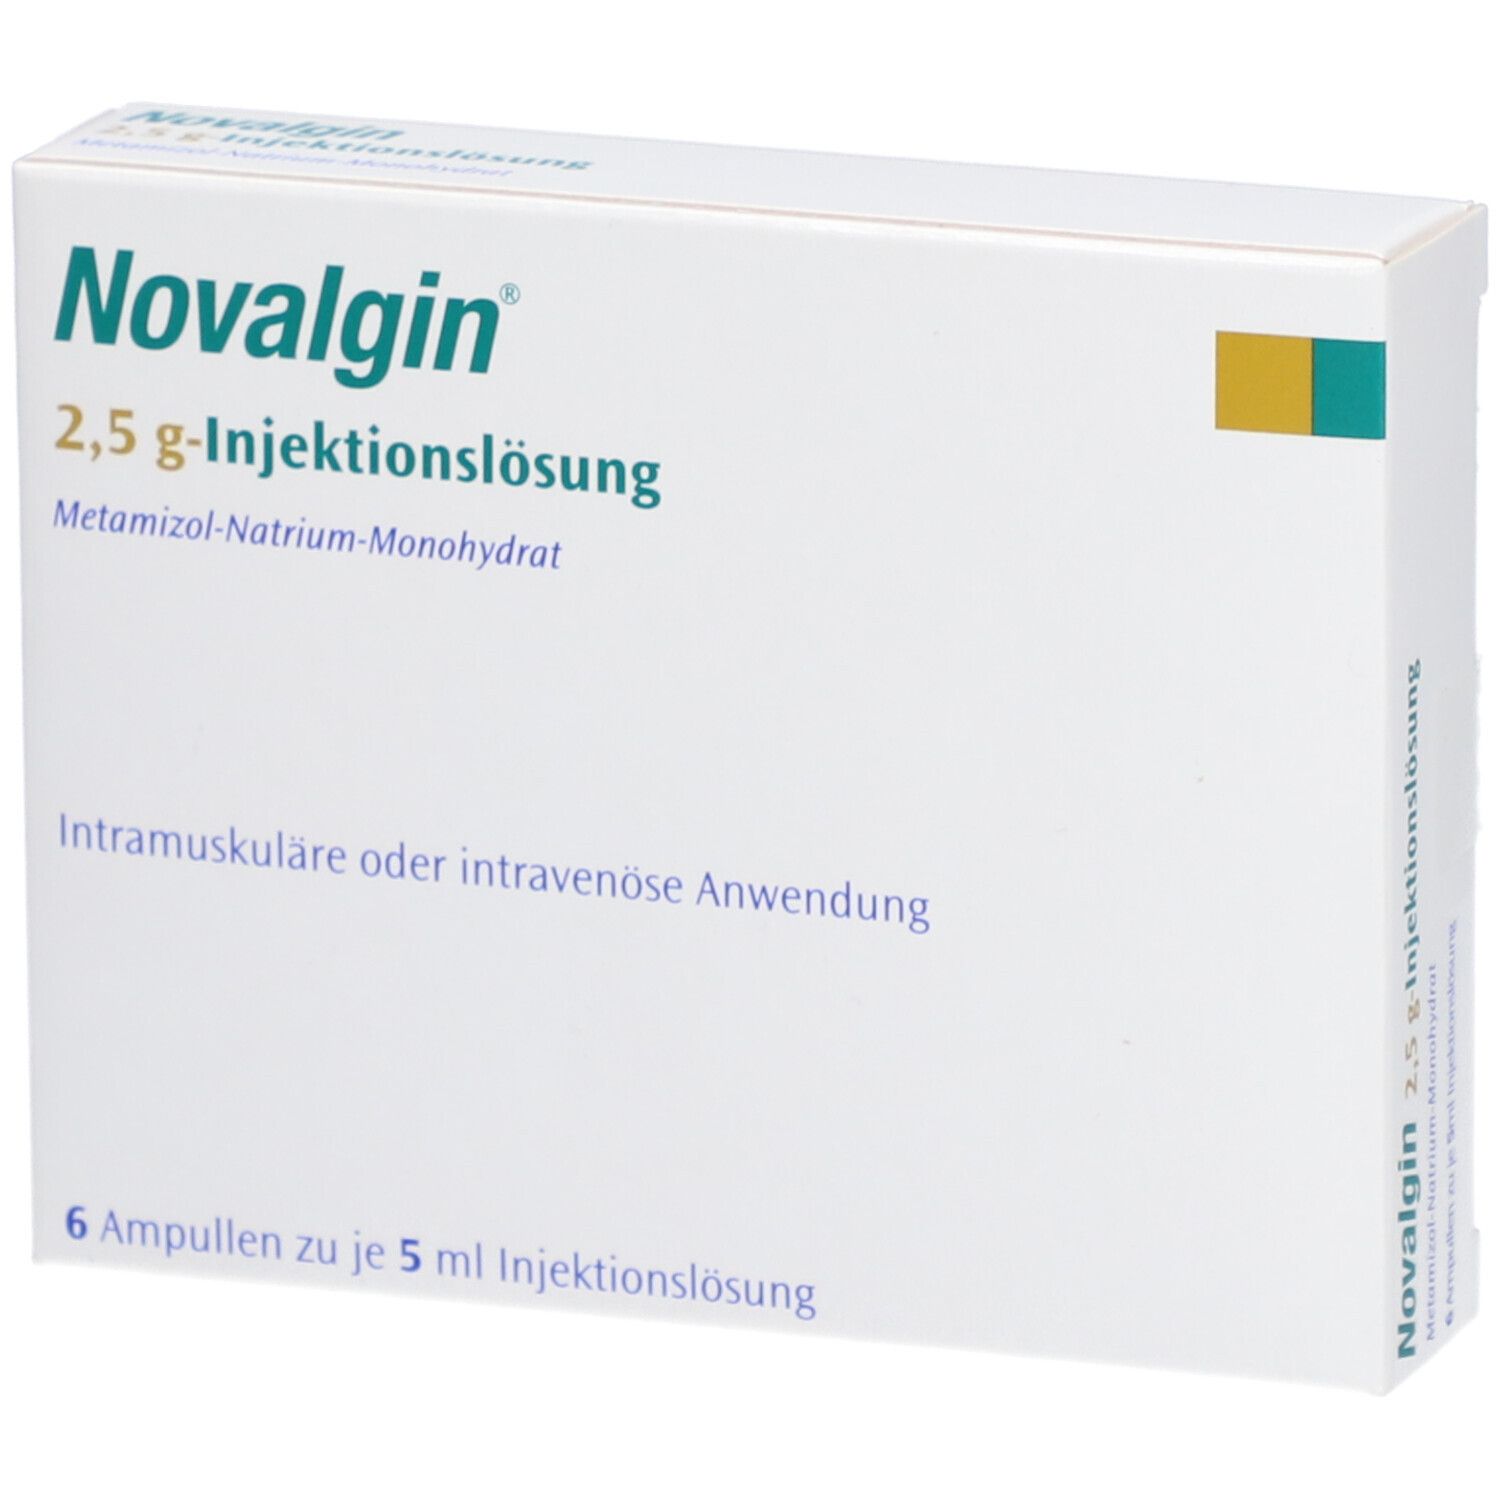 Novalgin Katze Dosierung